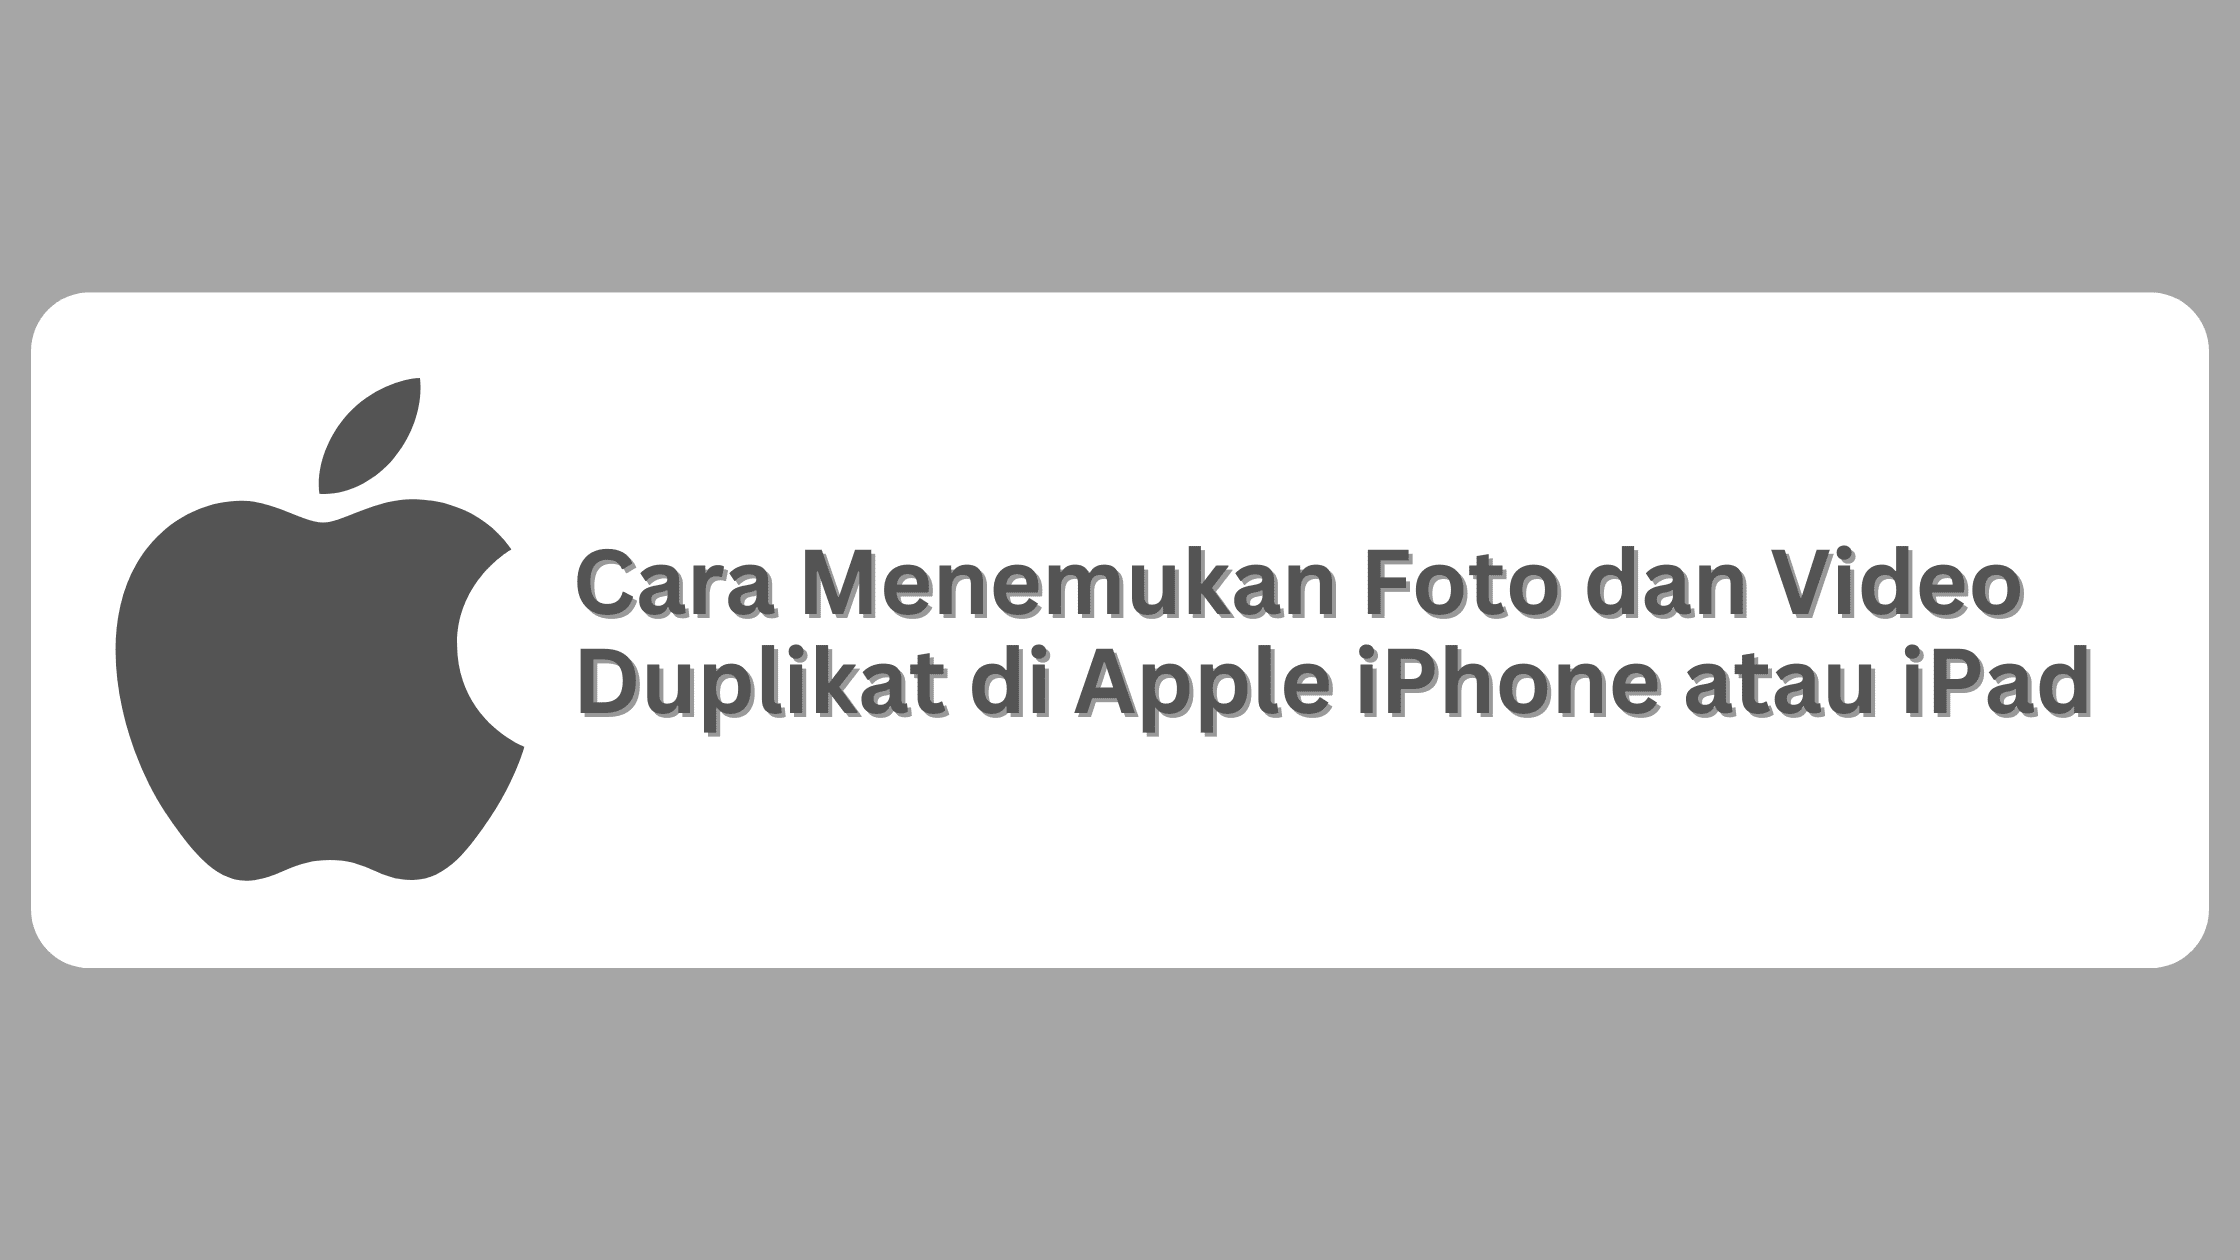 Cara Menemukan Foto dan Video Duplikat di Apple iPhone atau iPad